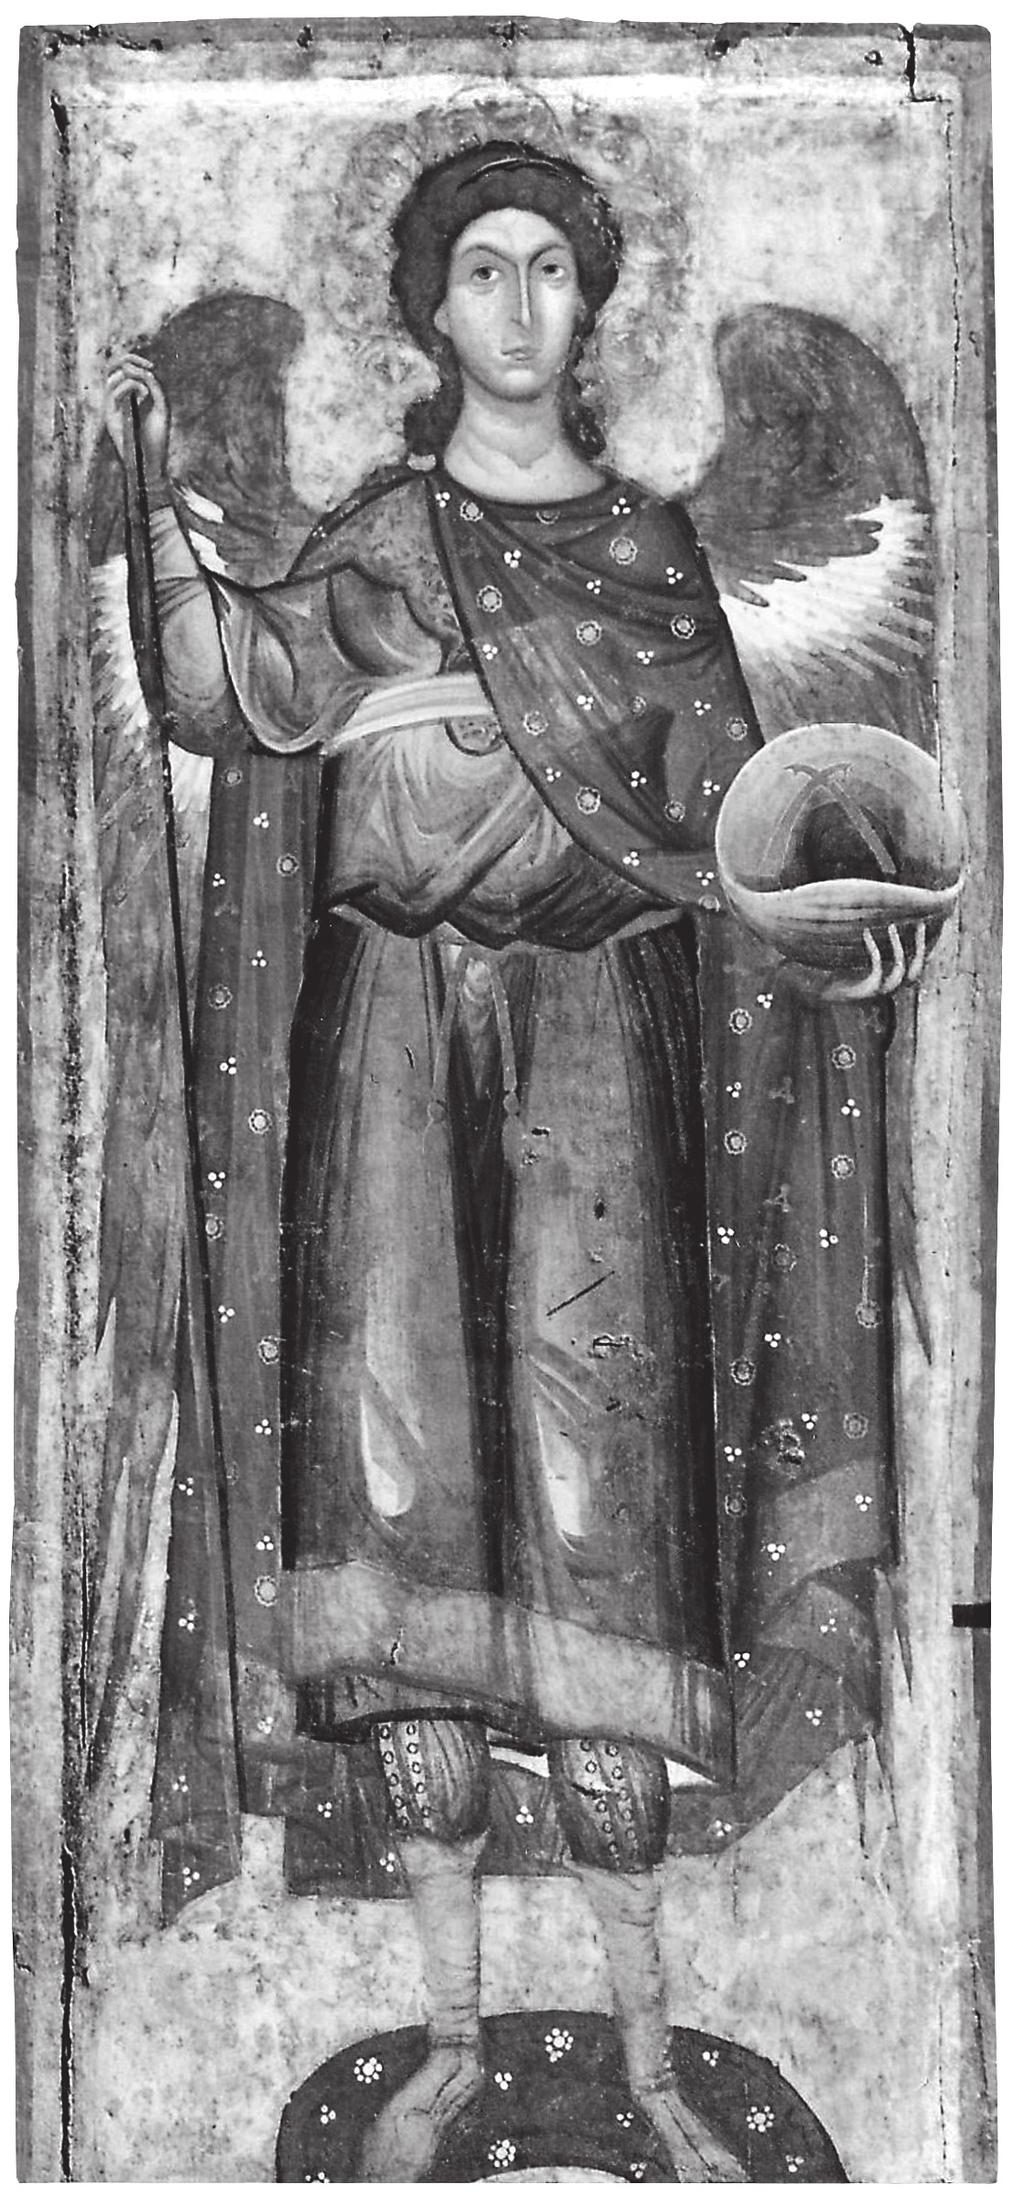 ΕΥΘΥΜΙΟΣ Ν. ΤΣΙΓΑΡΙΔΑΣ Εικ. 5. Βυζαντινό Μουσείο Καστοριάς. Αρχάγγελος Γαβριήλ. εκτελεστεί με την τεχνική του χαμηλού αναγλύφου.